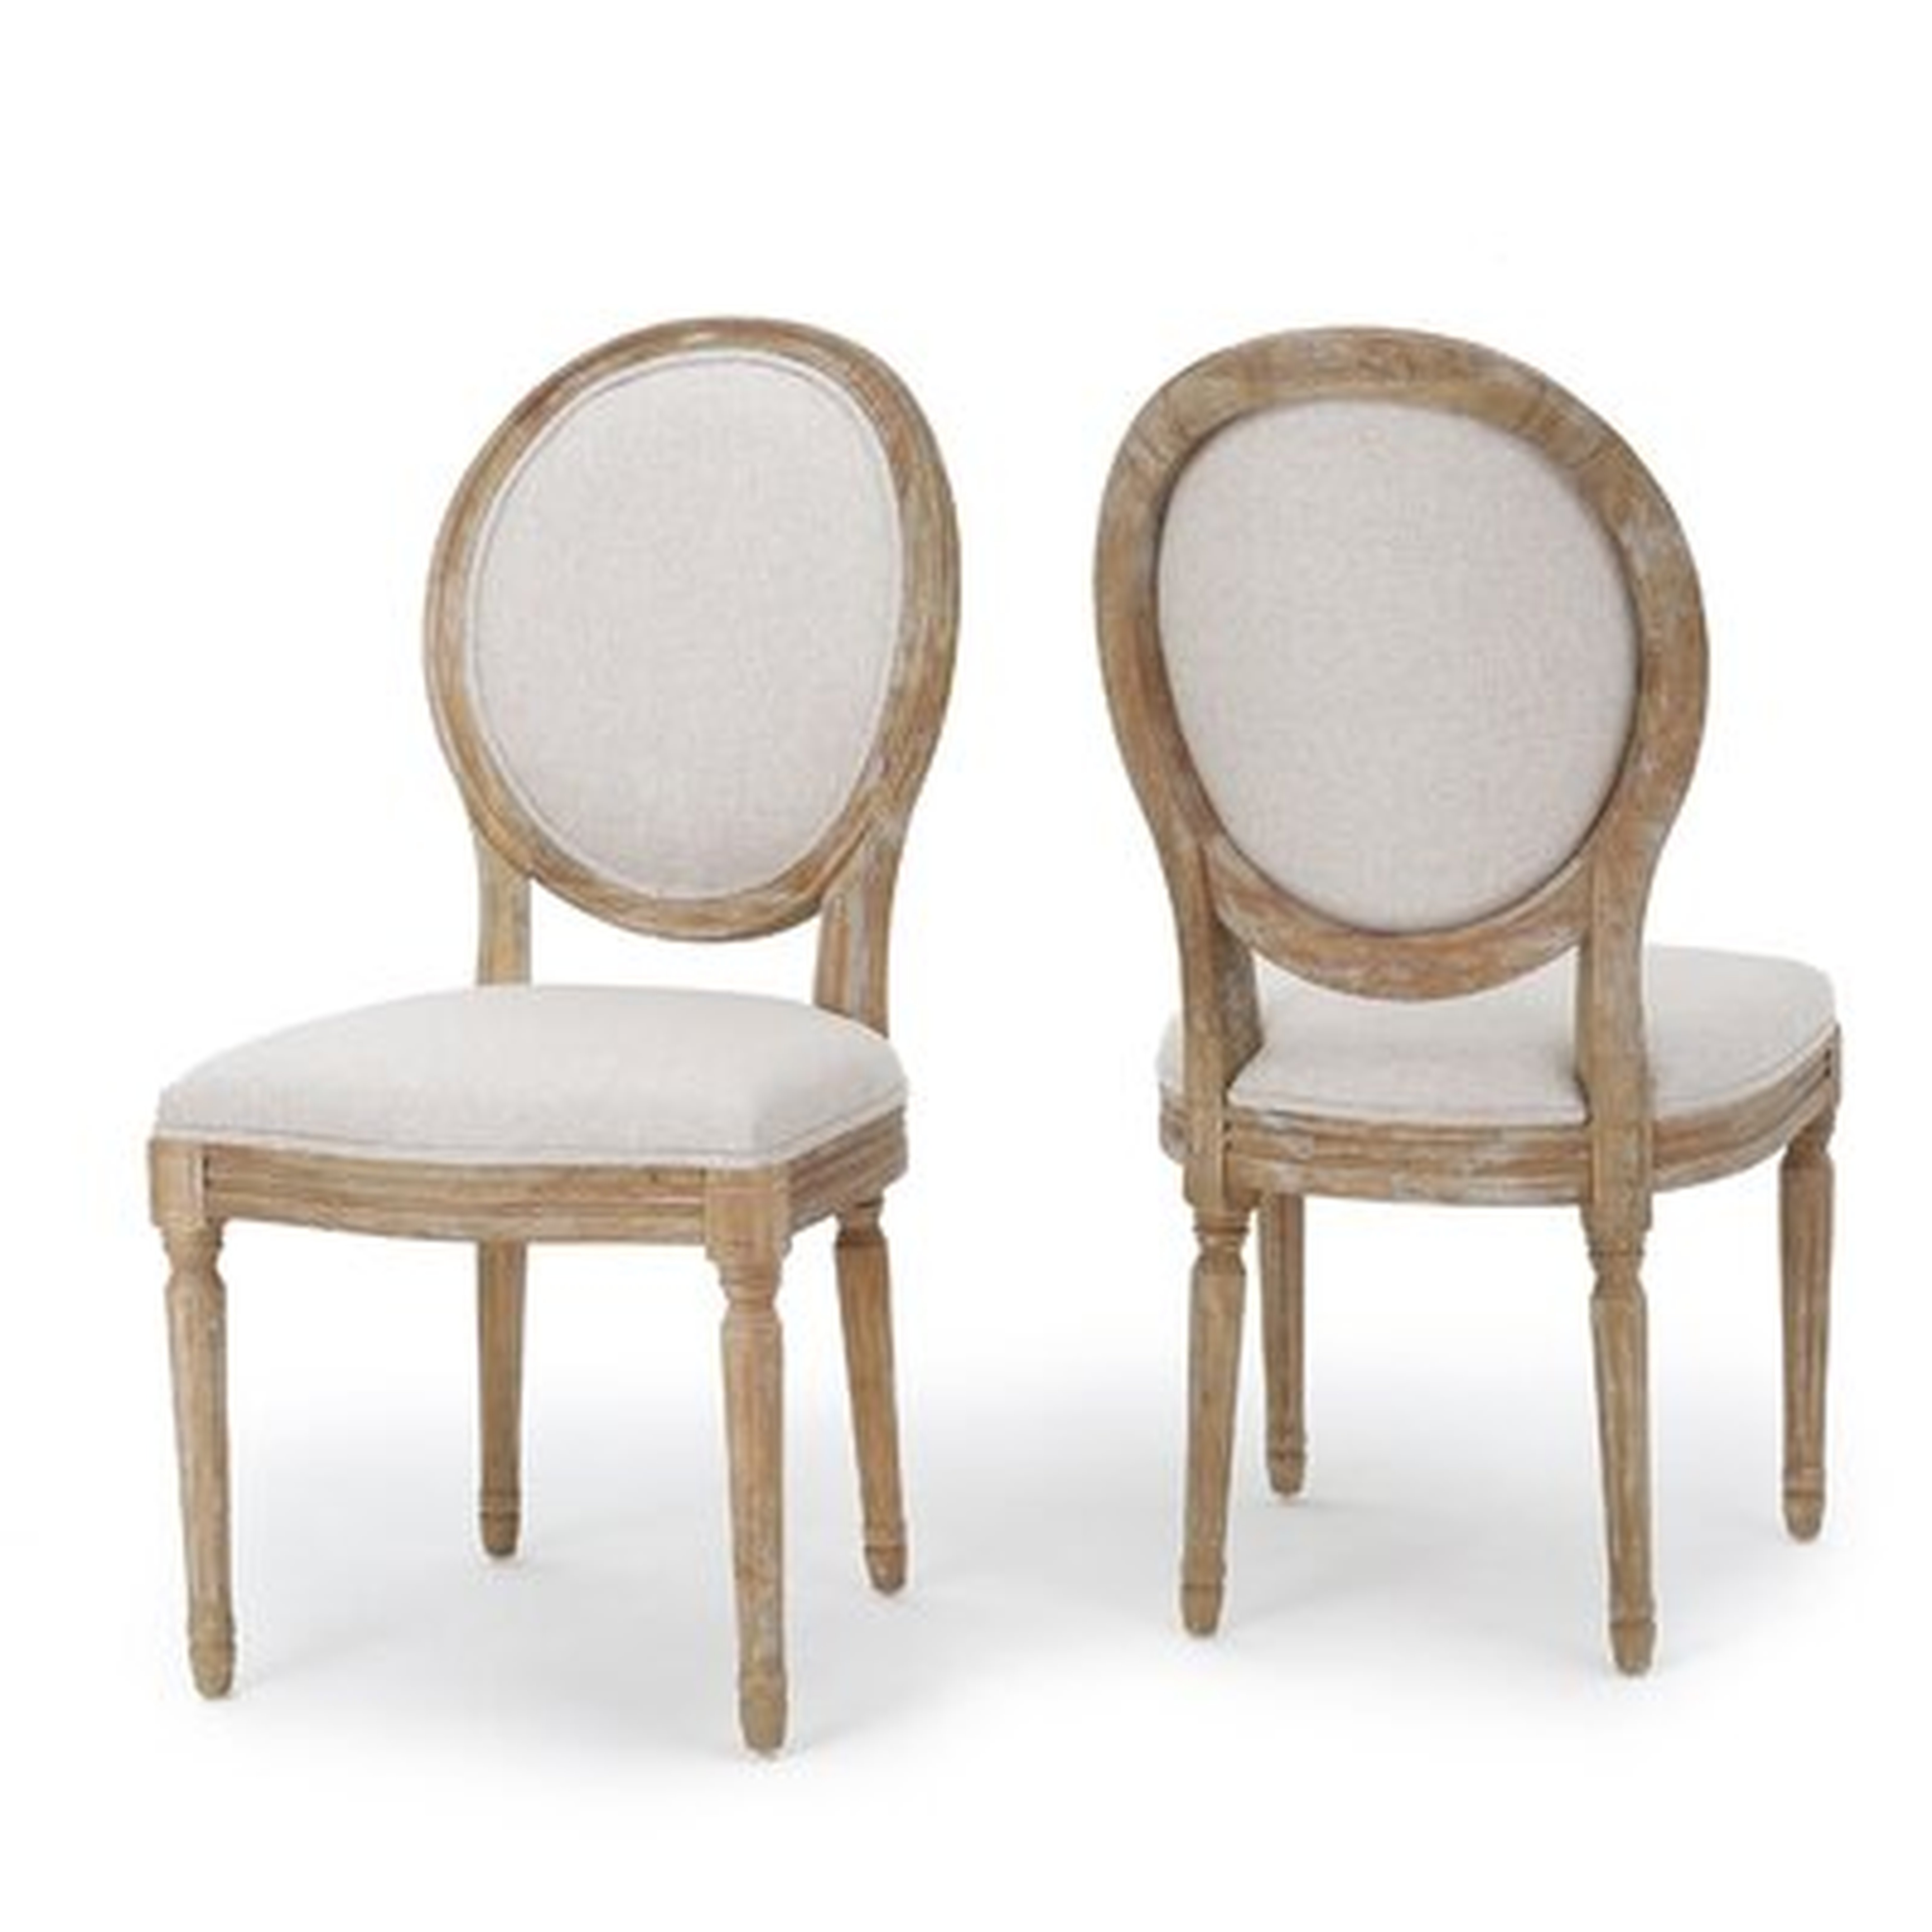 Jair Side Chair- set of 2 - Wayfair